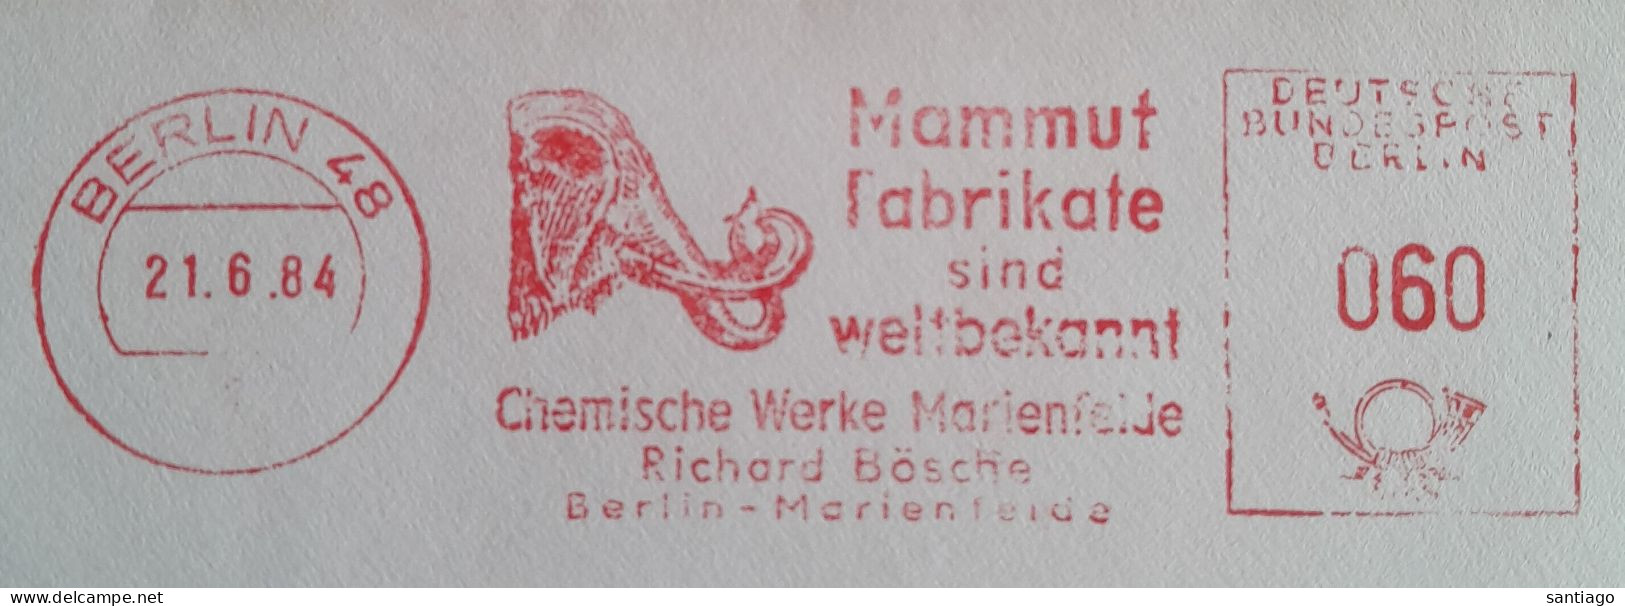 Duitsland Berlin 48 Mechanische Frankering / Mammut - Mammoet Fabrikate Sind Wellbekannt - Ungebraucht